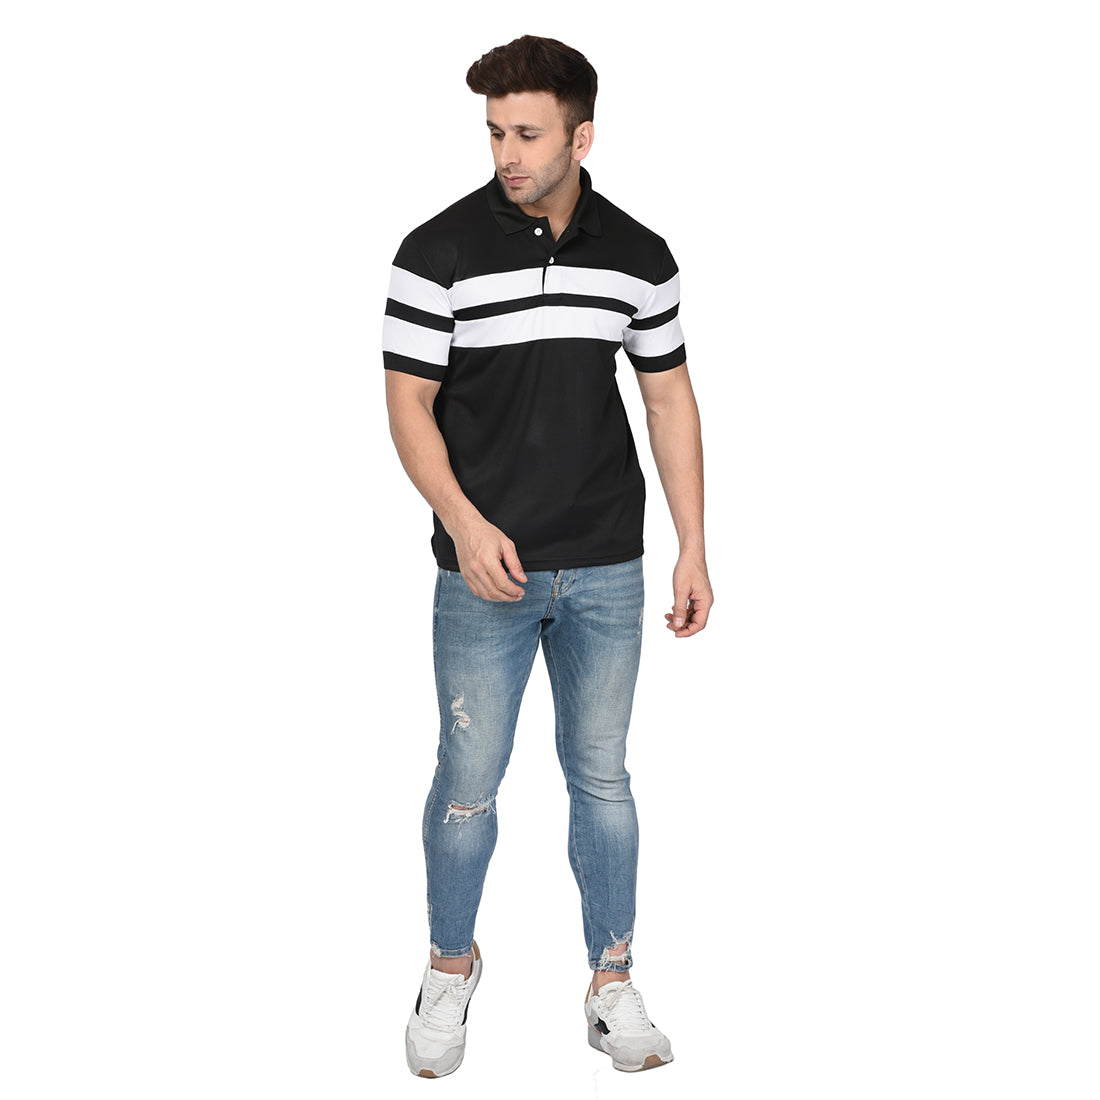 Buy Pepe Jeans Black Polo TShirt for Mens Online  Tata CLiQ